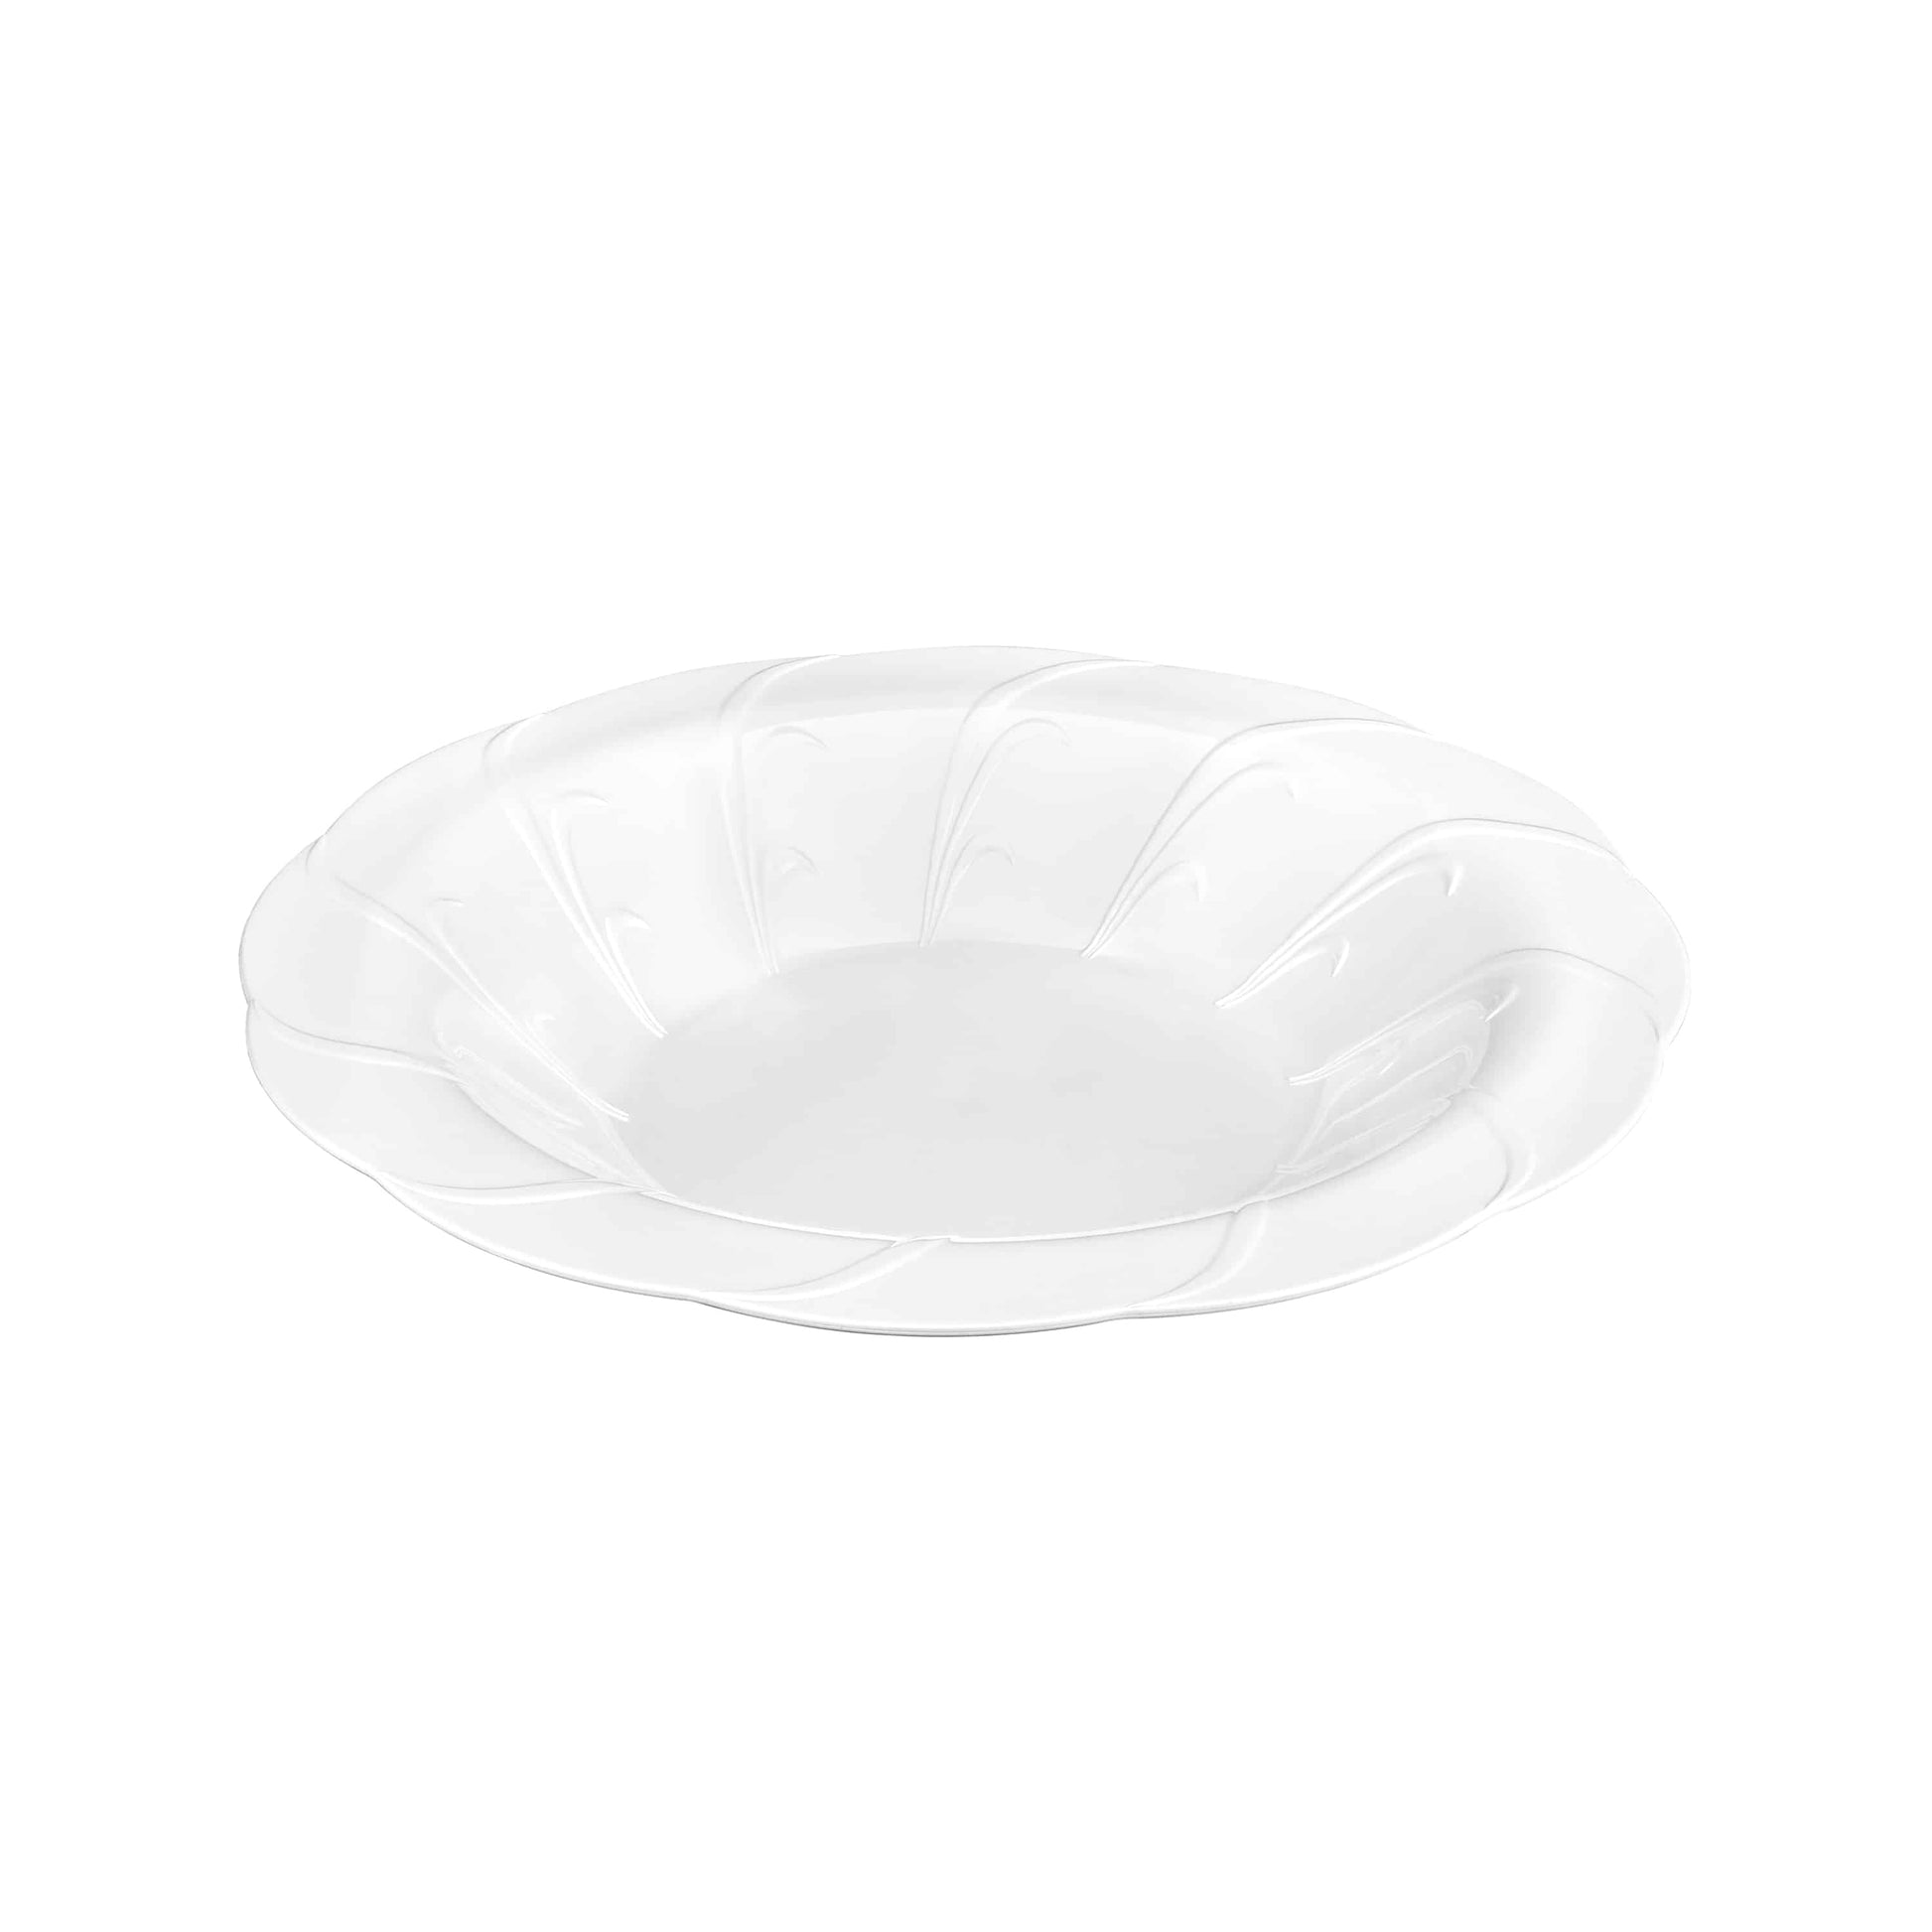 Elegance Premium Plastic Round Dinner Bowl